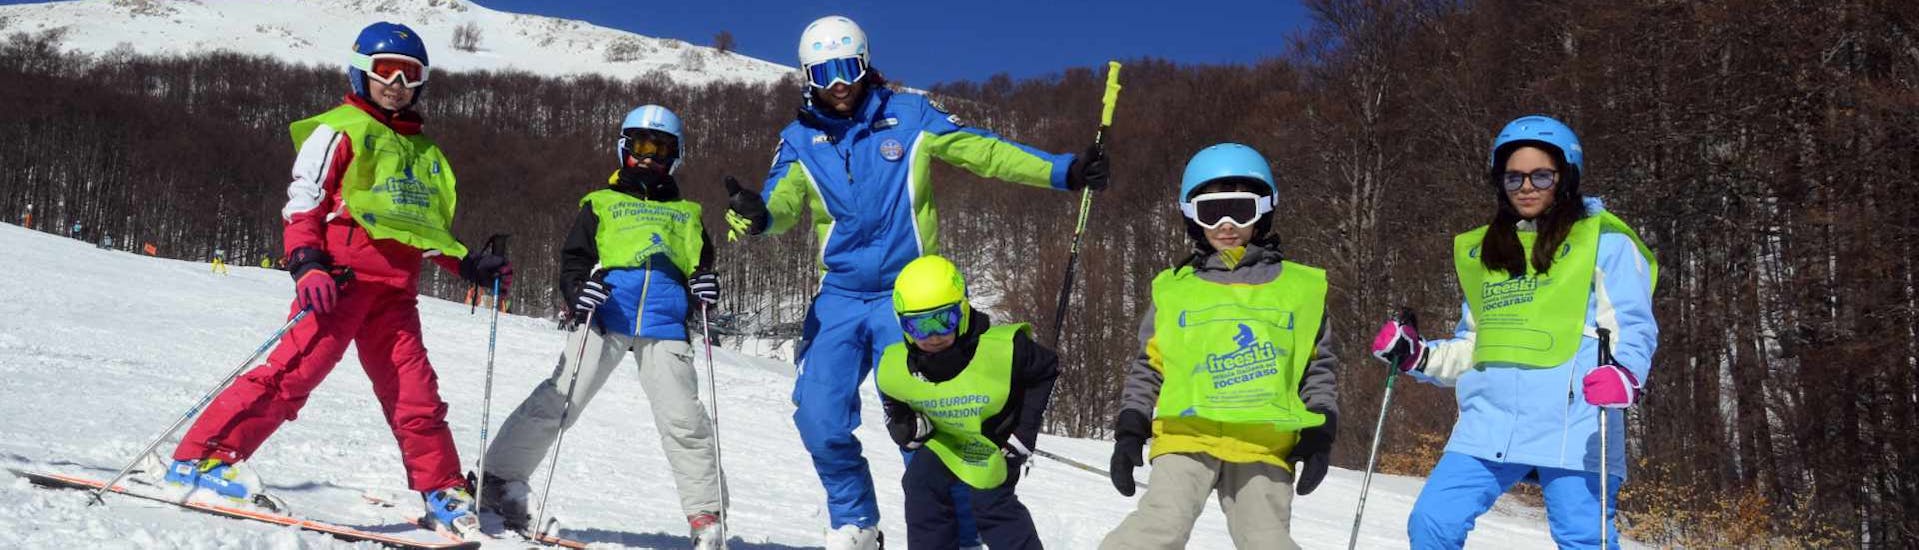 Kinder-Skikurs ab 5 Jahren für Fortgeschrittene.